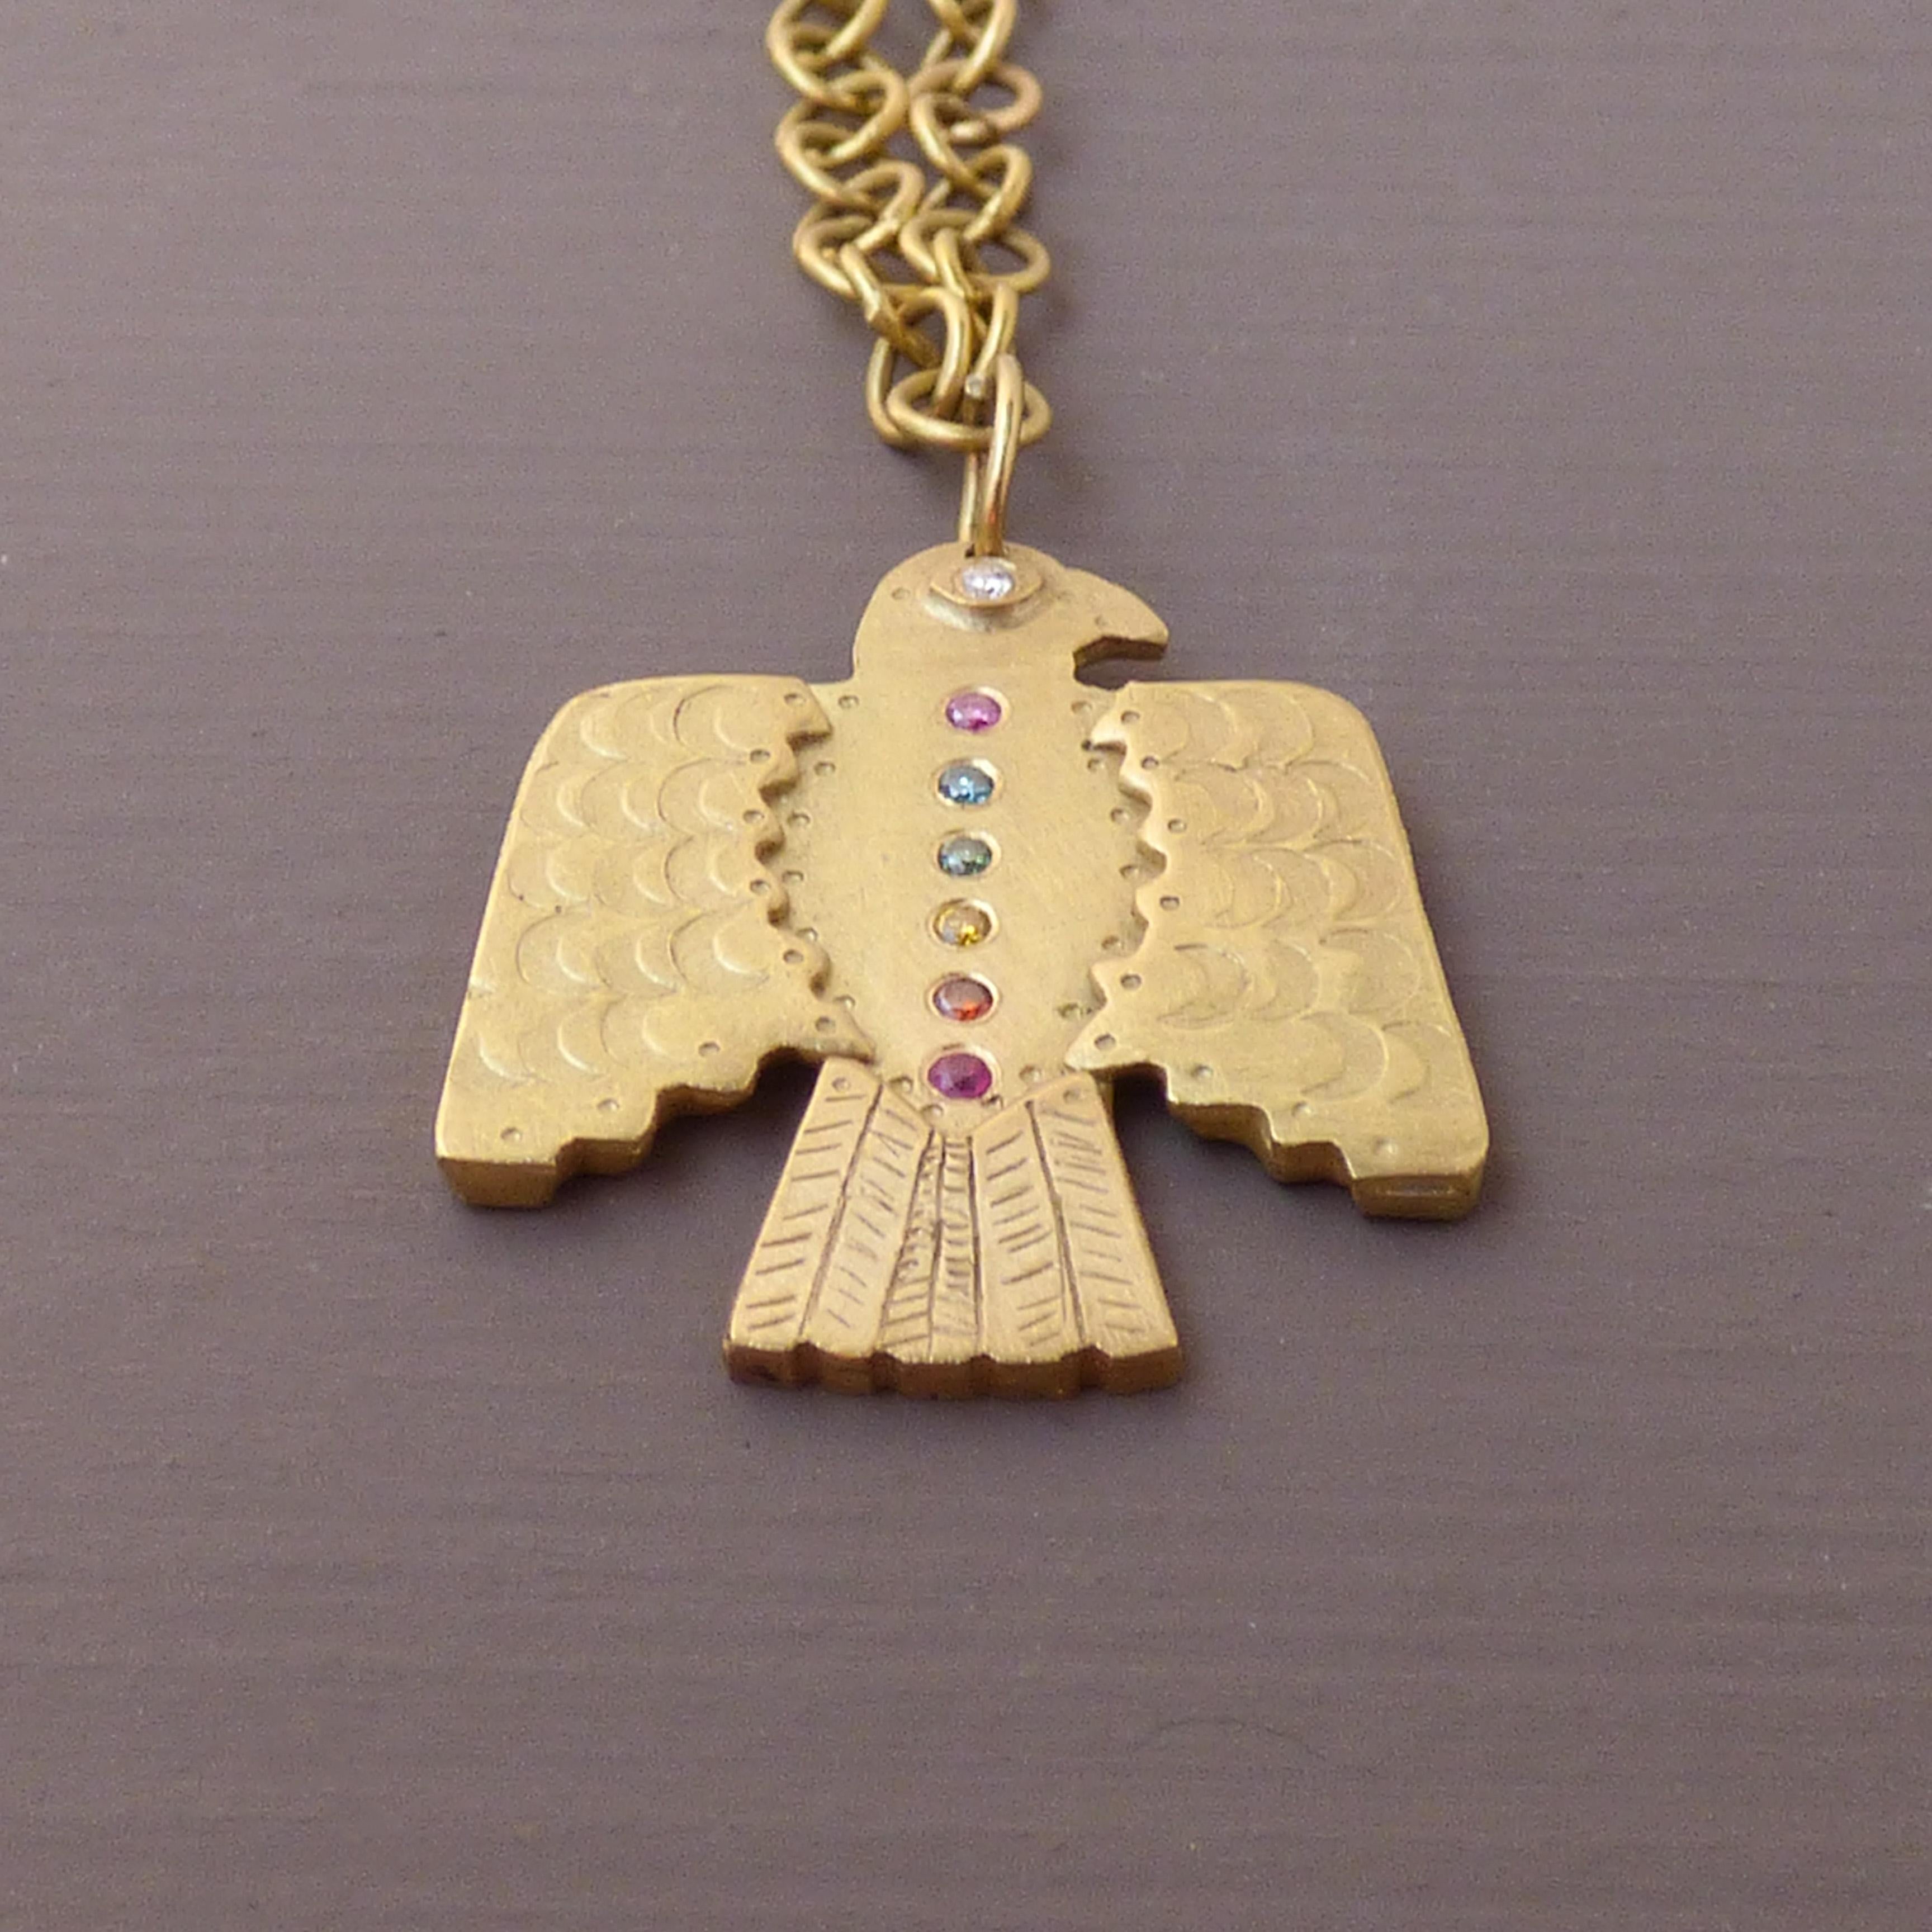 Das ethische Thunderbird-Amulett ist handgefertigt aus 18-karätigem Fairtrade-Gold aus Peru, mit Regenbogen-Diamanten und einem Rubin aus ethischen Quellen.

Der Donnervogel ist ein mächtiges Amulett, das für Stärke und Macht steht und gleichzeitig